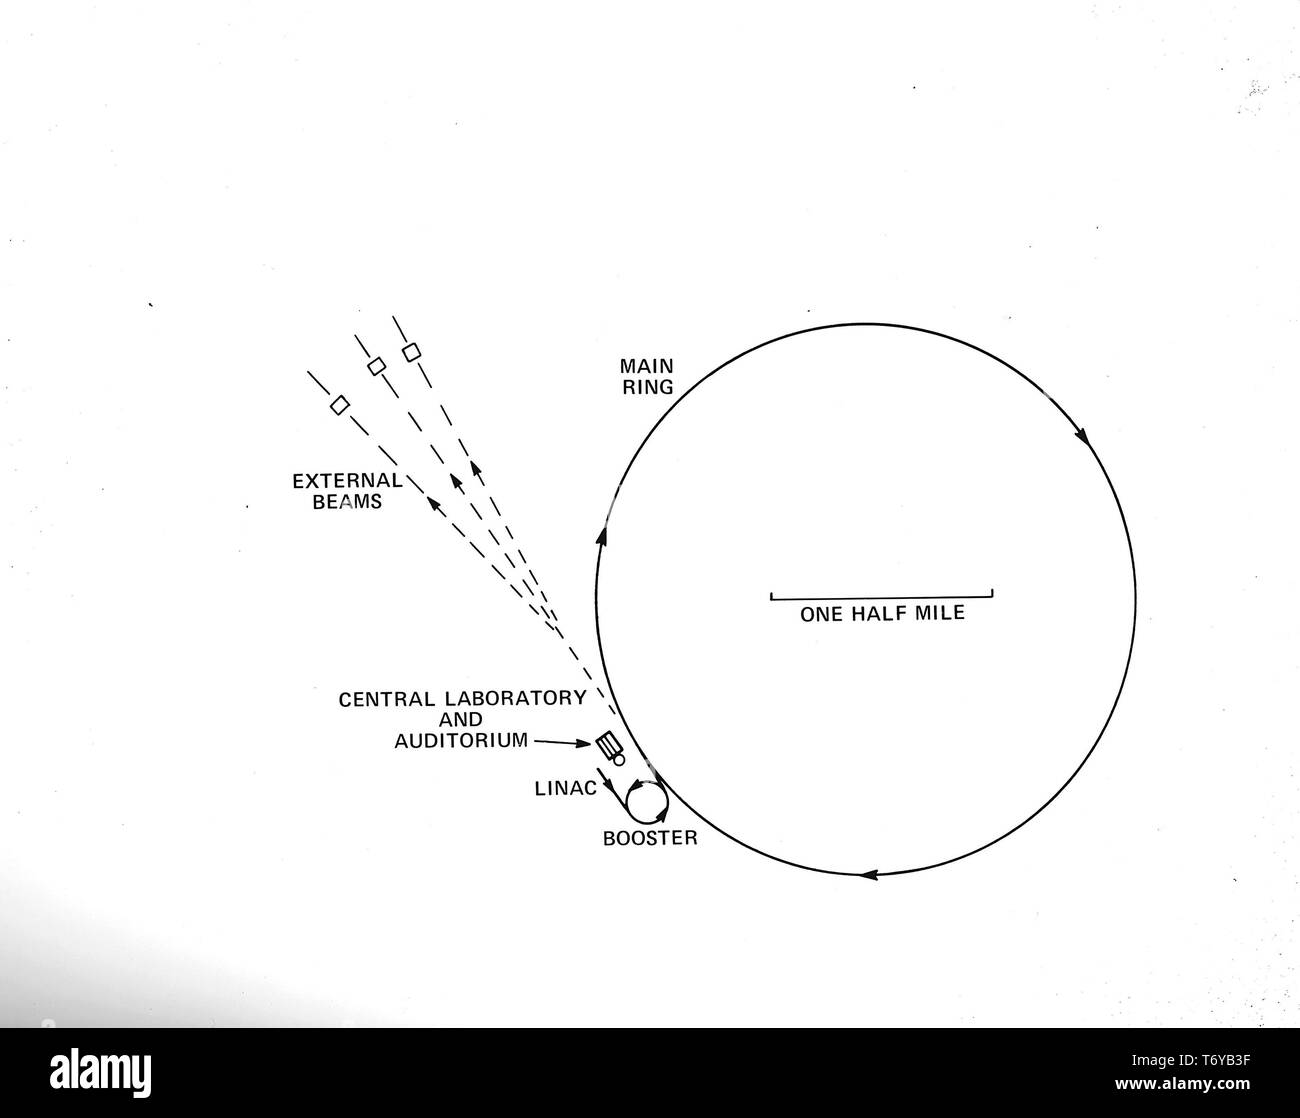 Diagramm der linearen des Fermilab Teilchenbeschleuniger, mit vier - Meile umfang Hauptring und kleinere booster Ring, 1973. Mit freundlicher Genehmigung des US-Ministeriums für Energie. () Stockfoto